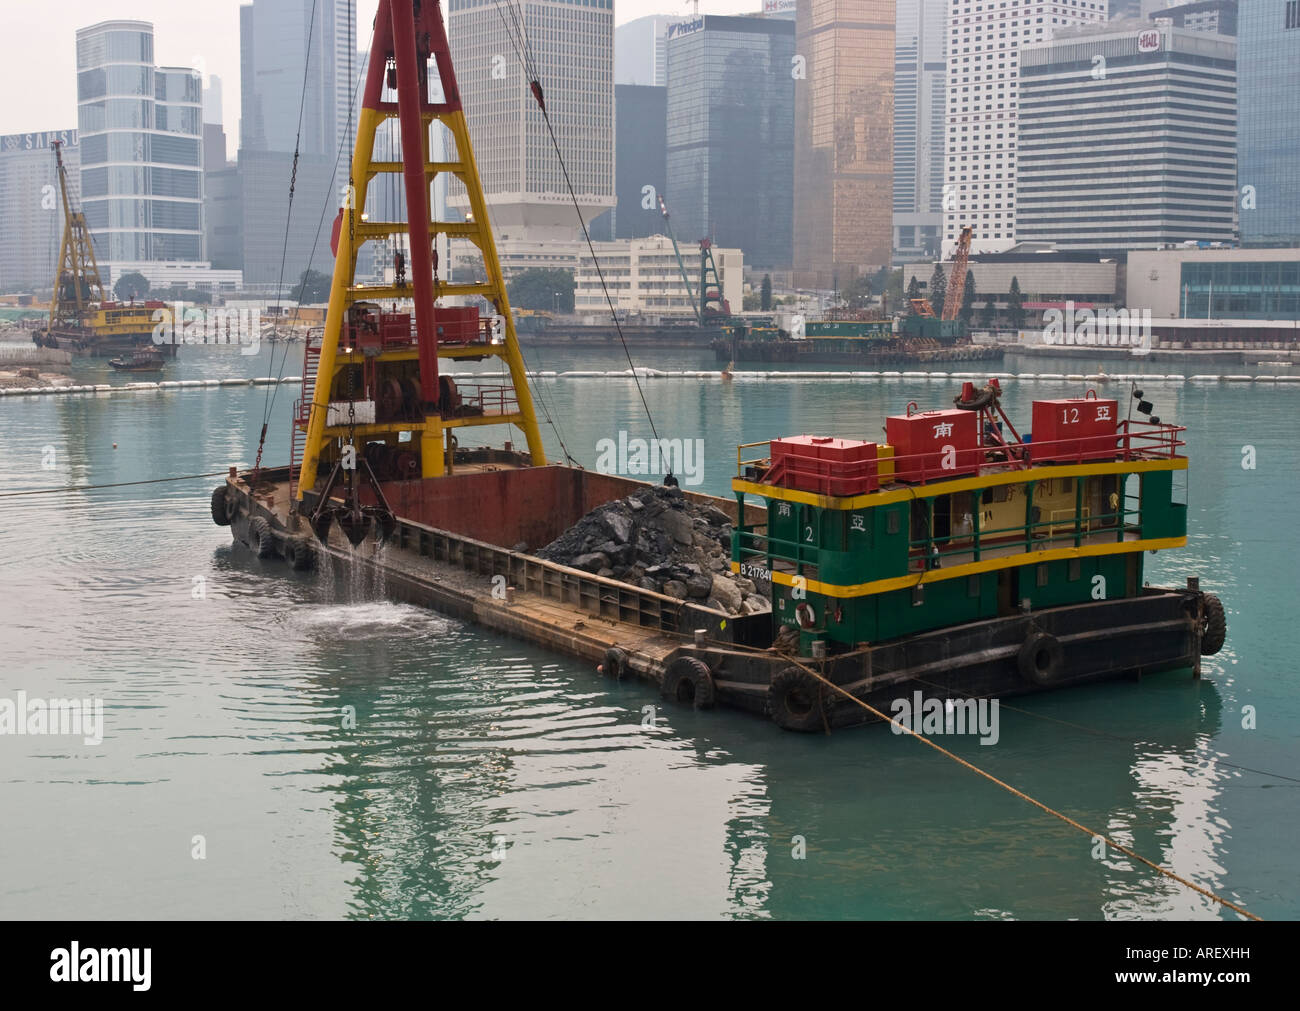 Chinese land reclamation barge, Hong Kong Stock Photo